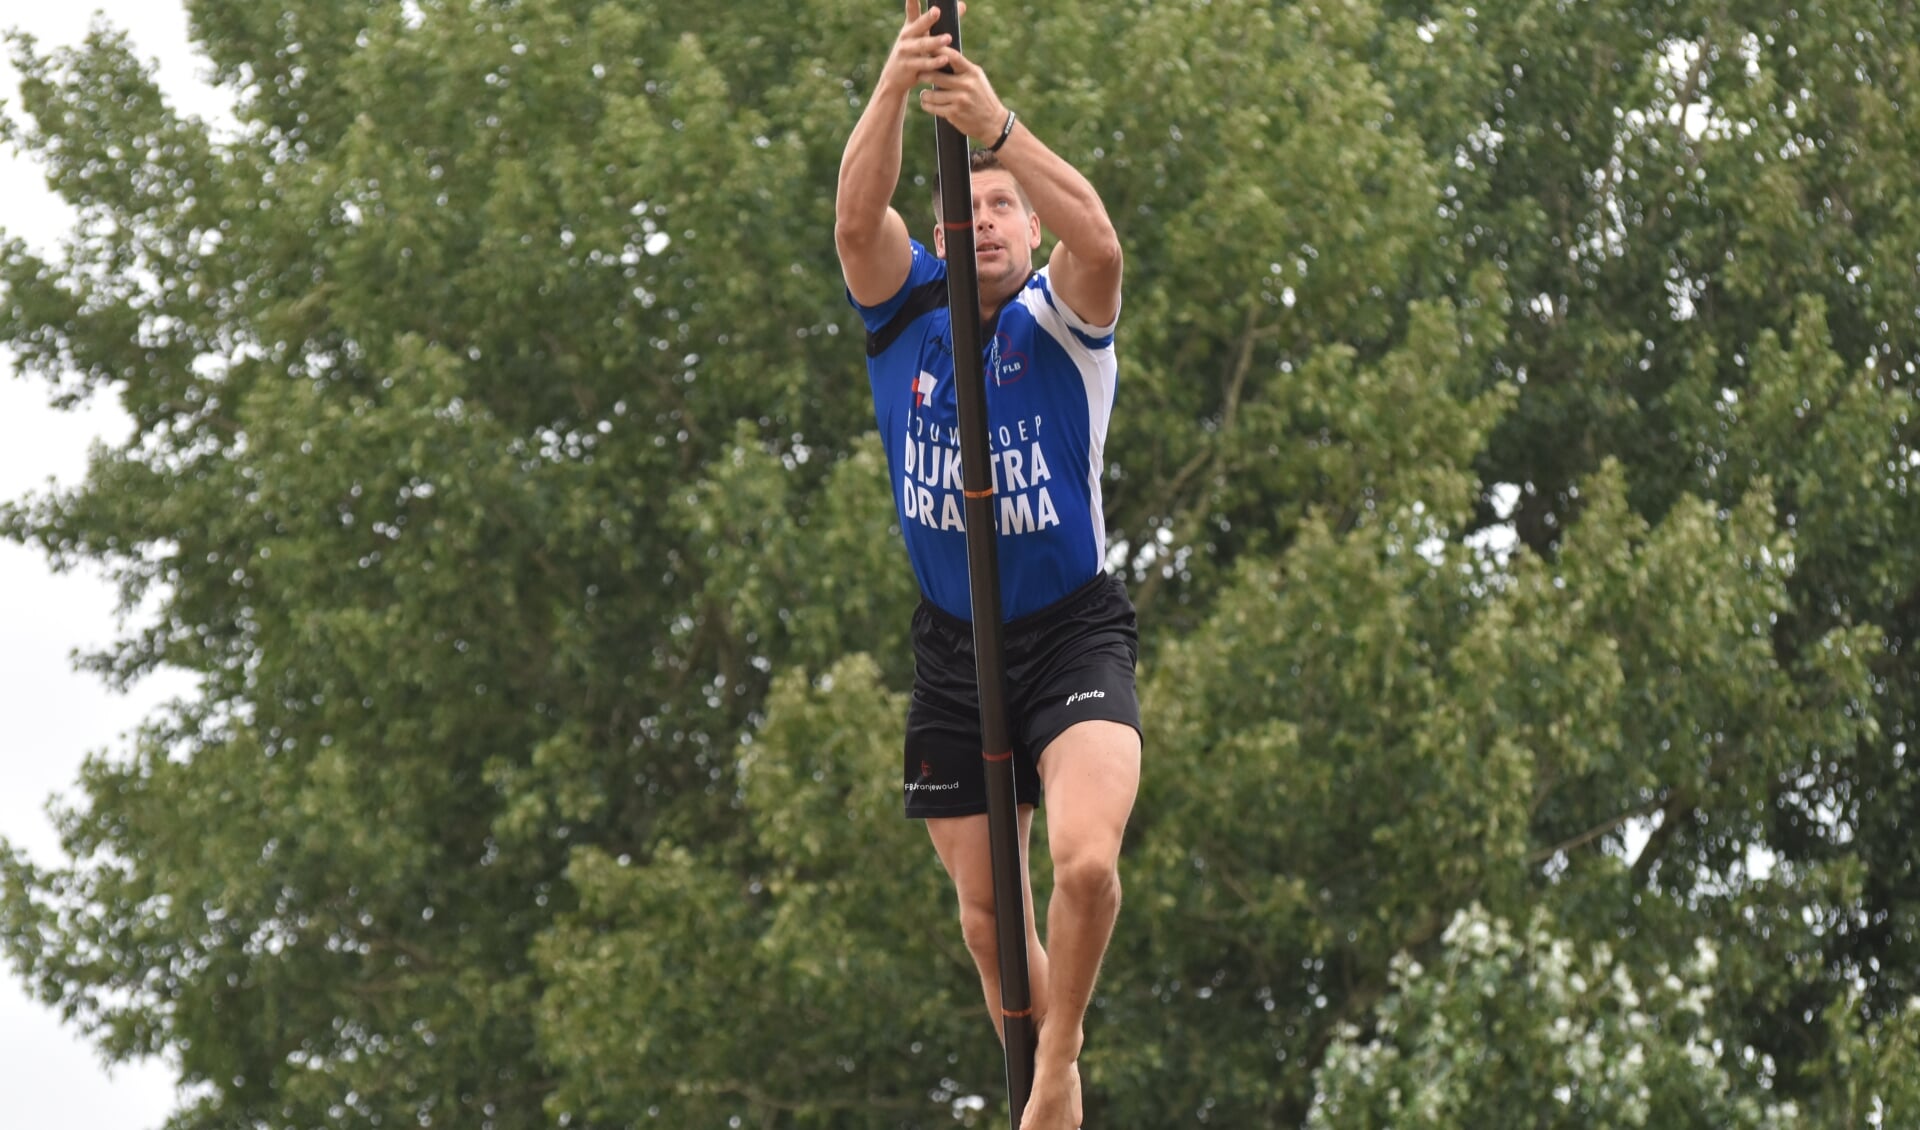 Bart Helmholt in actie op de fierljepschans in Buitenpost, 1 augustus. Hij won toen met een matige sprong van 17,97 meter. Dat zal zaterdag op het NK in Burgum waarschijnlijk niet genoeg zijn.